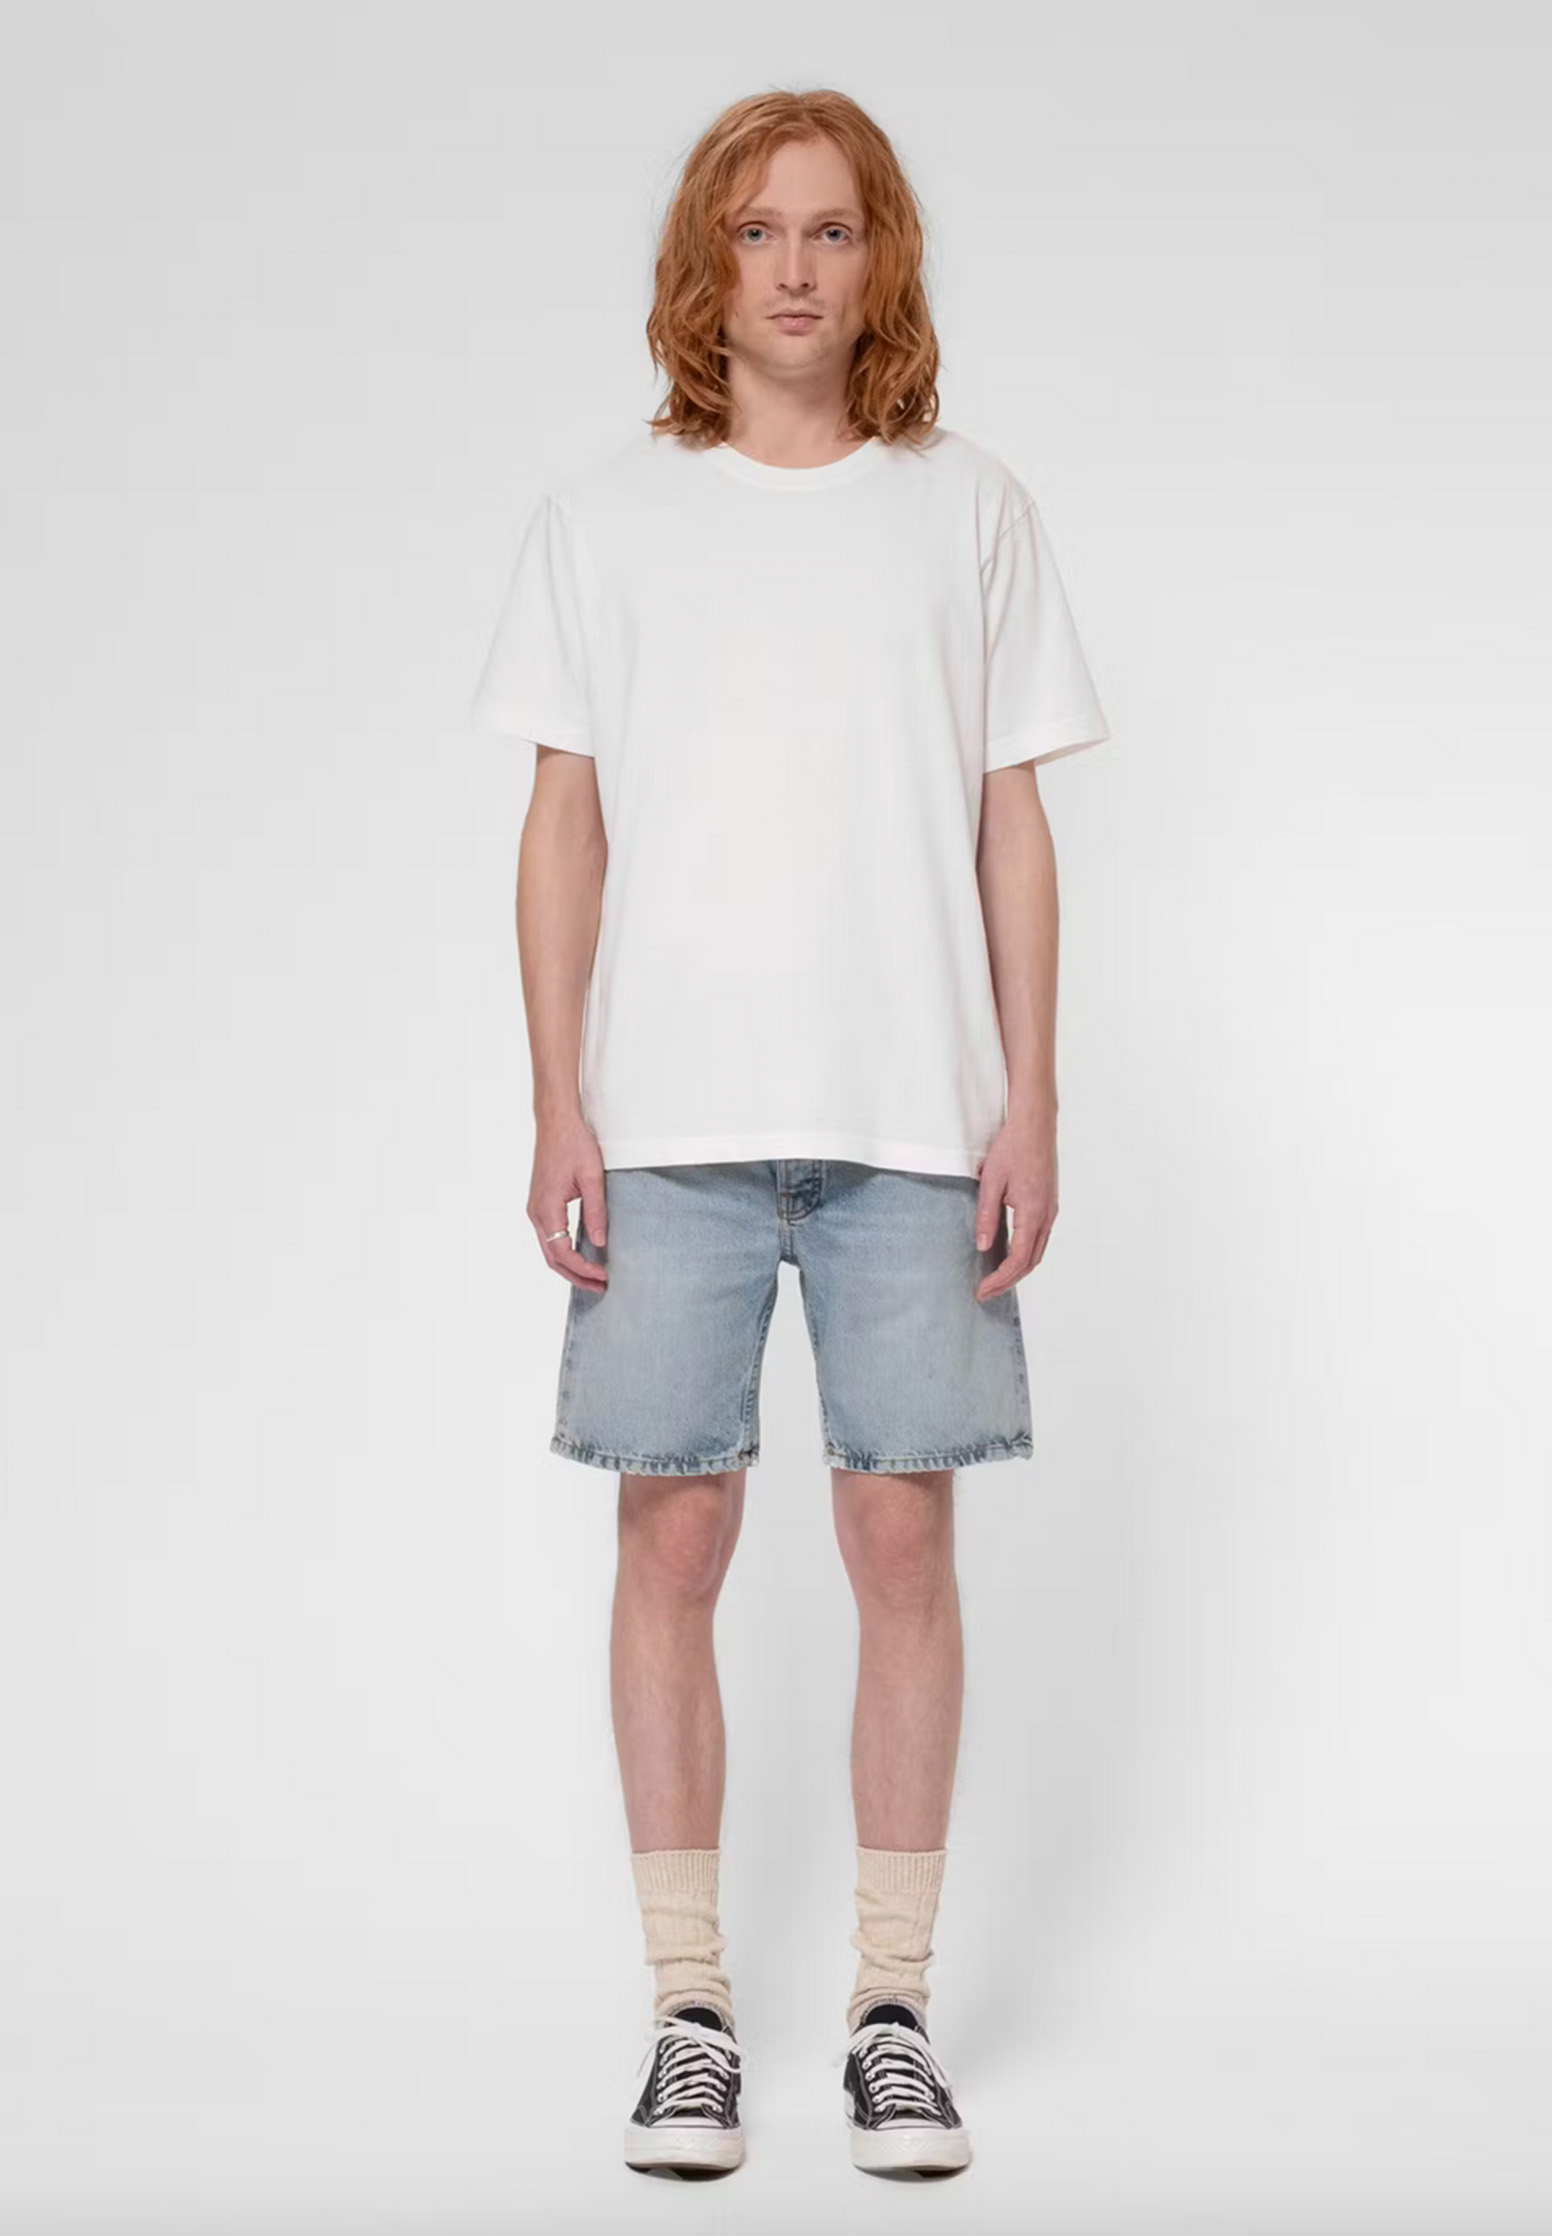 Bekleidung, Kurze Hosen, T-shirt, Person